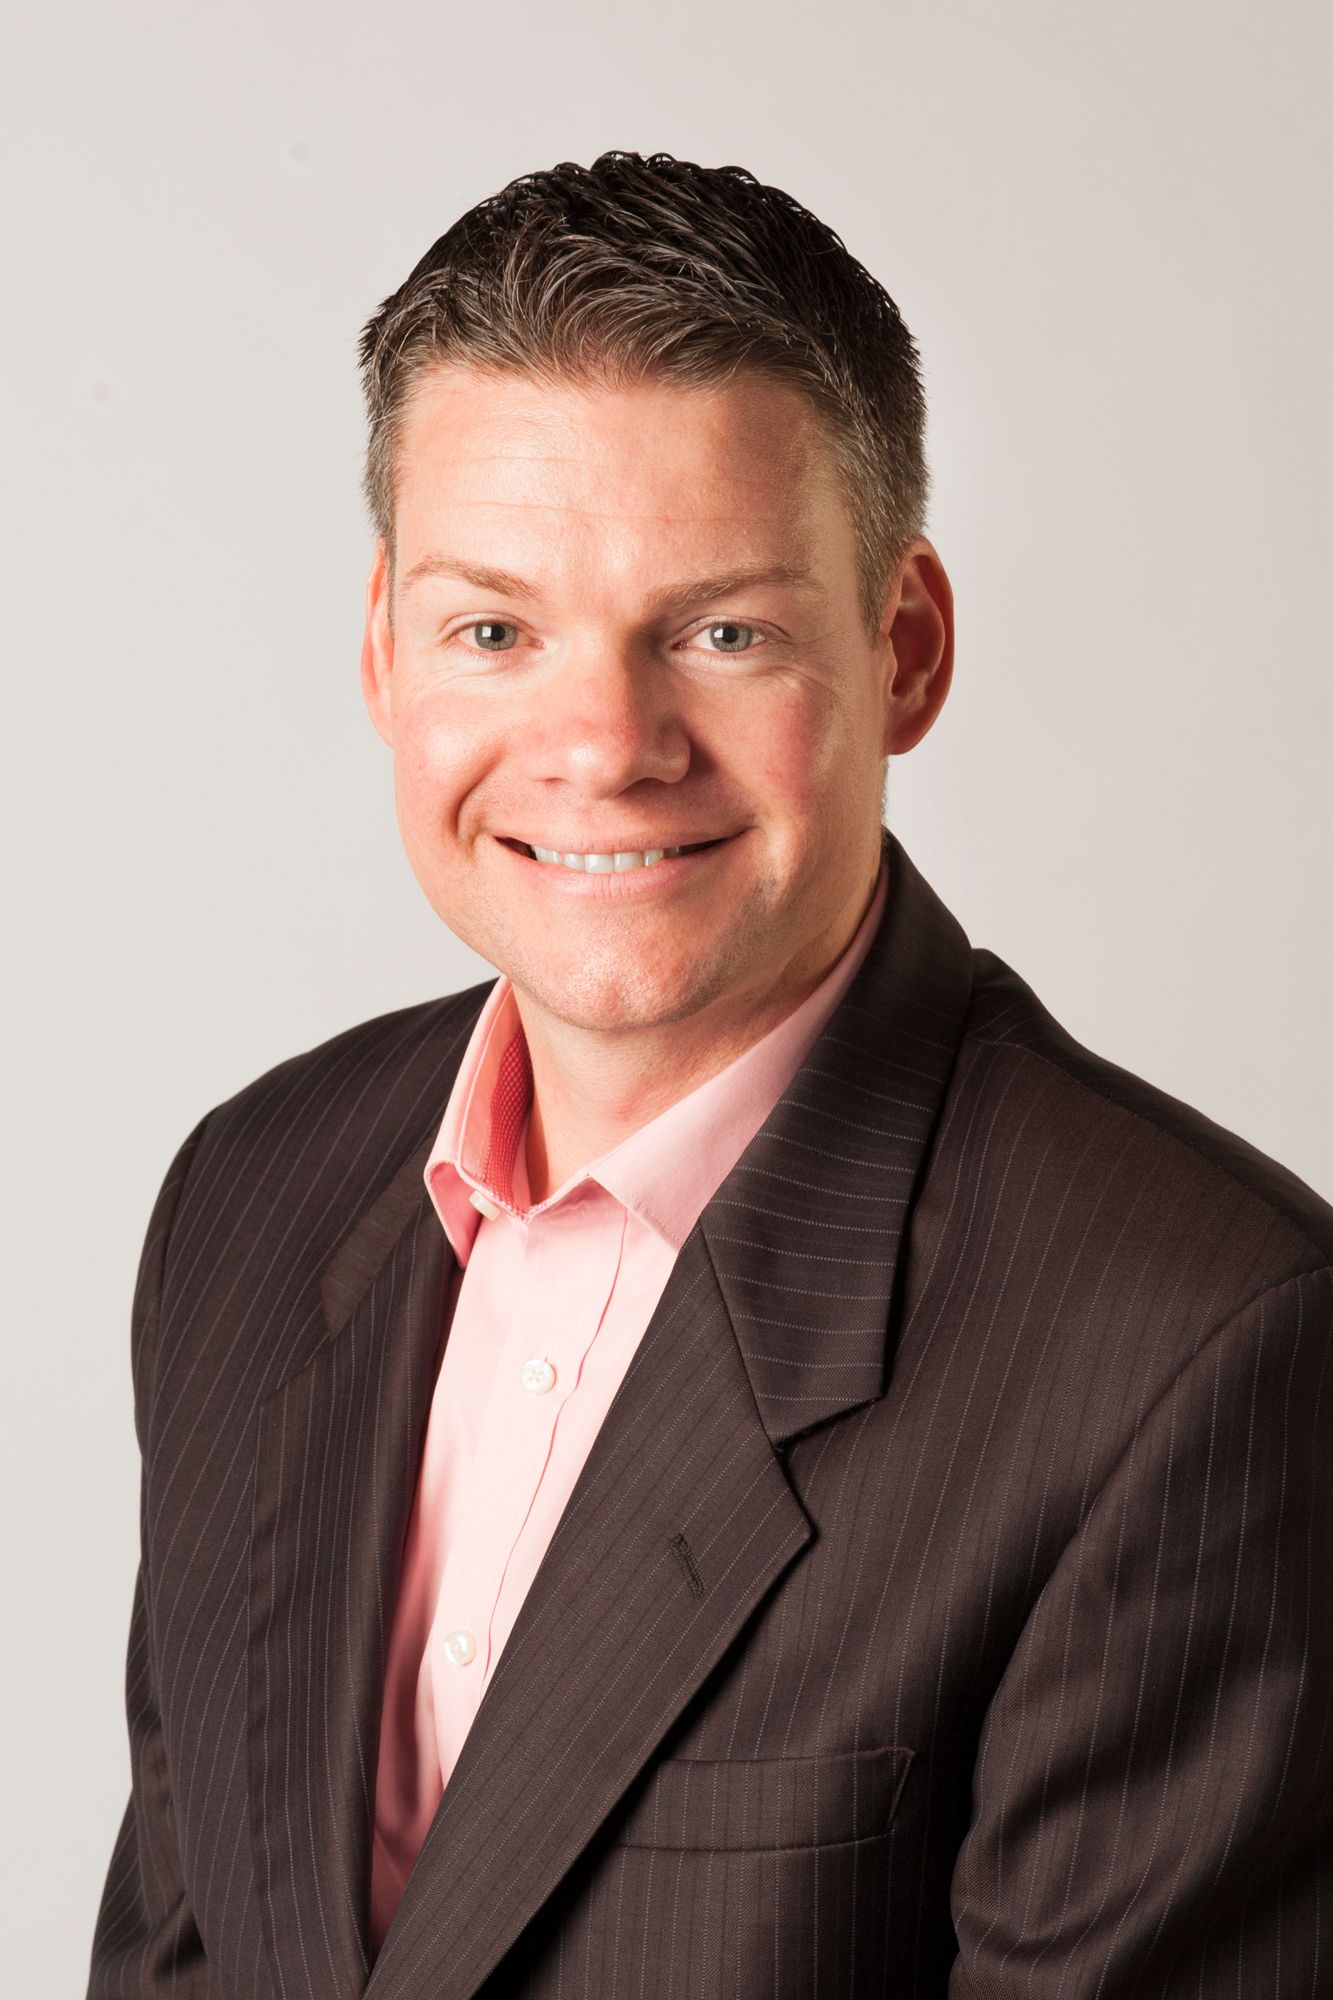 Swinburne Professional General Manager Craig McCallum